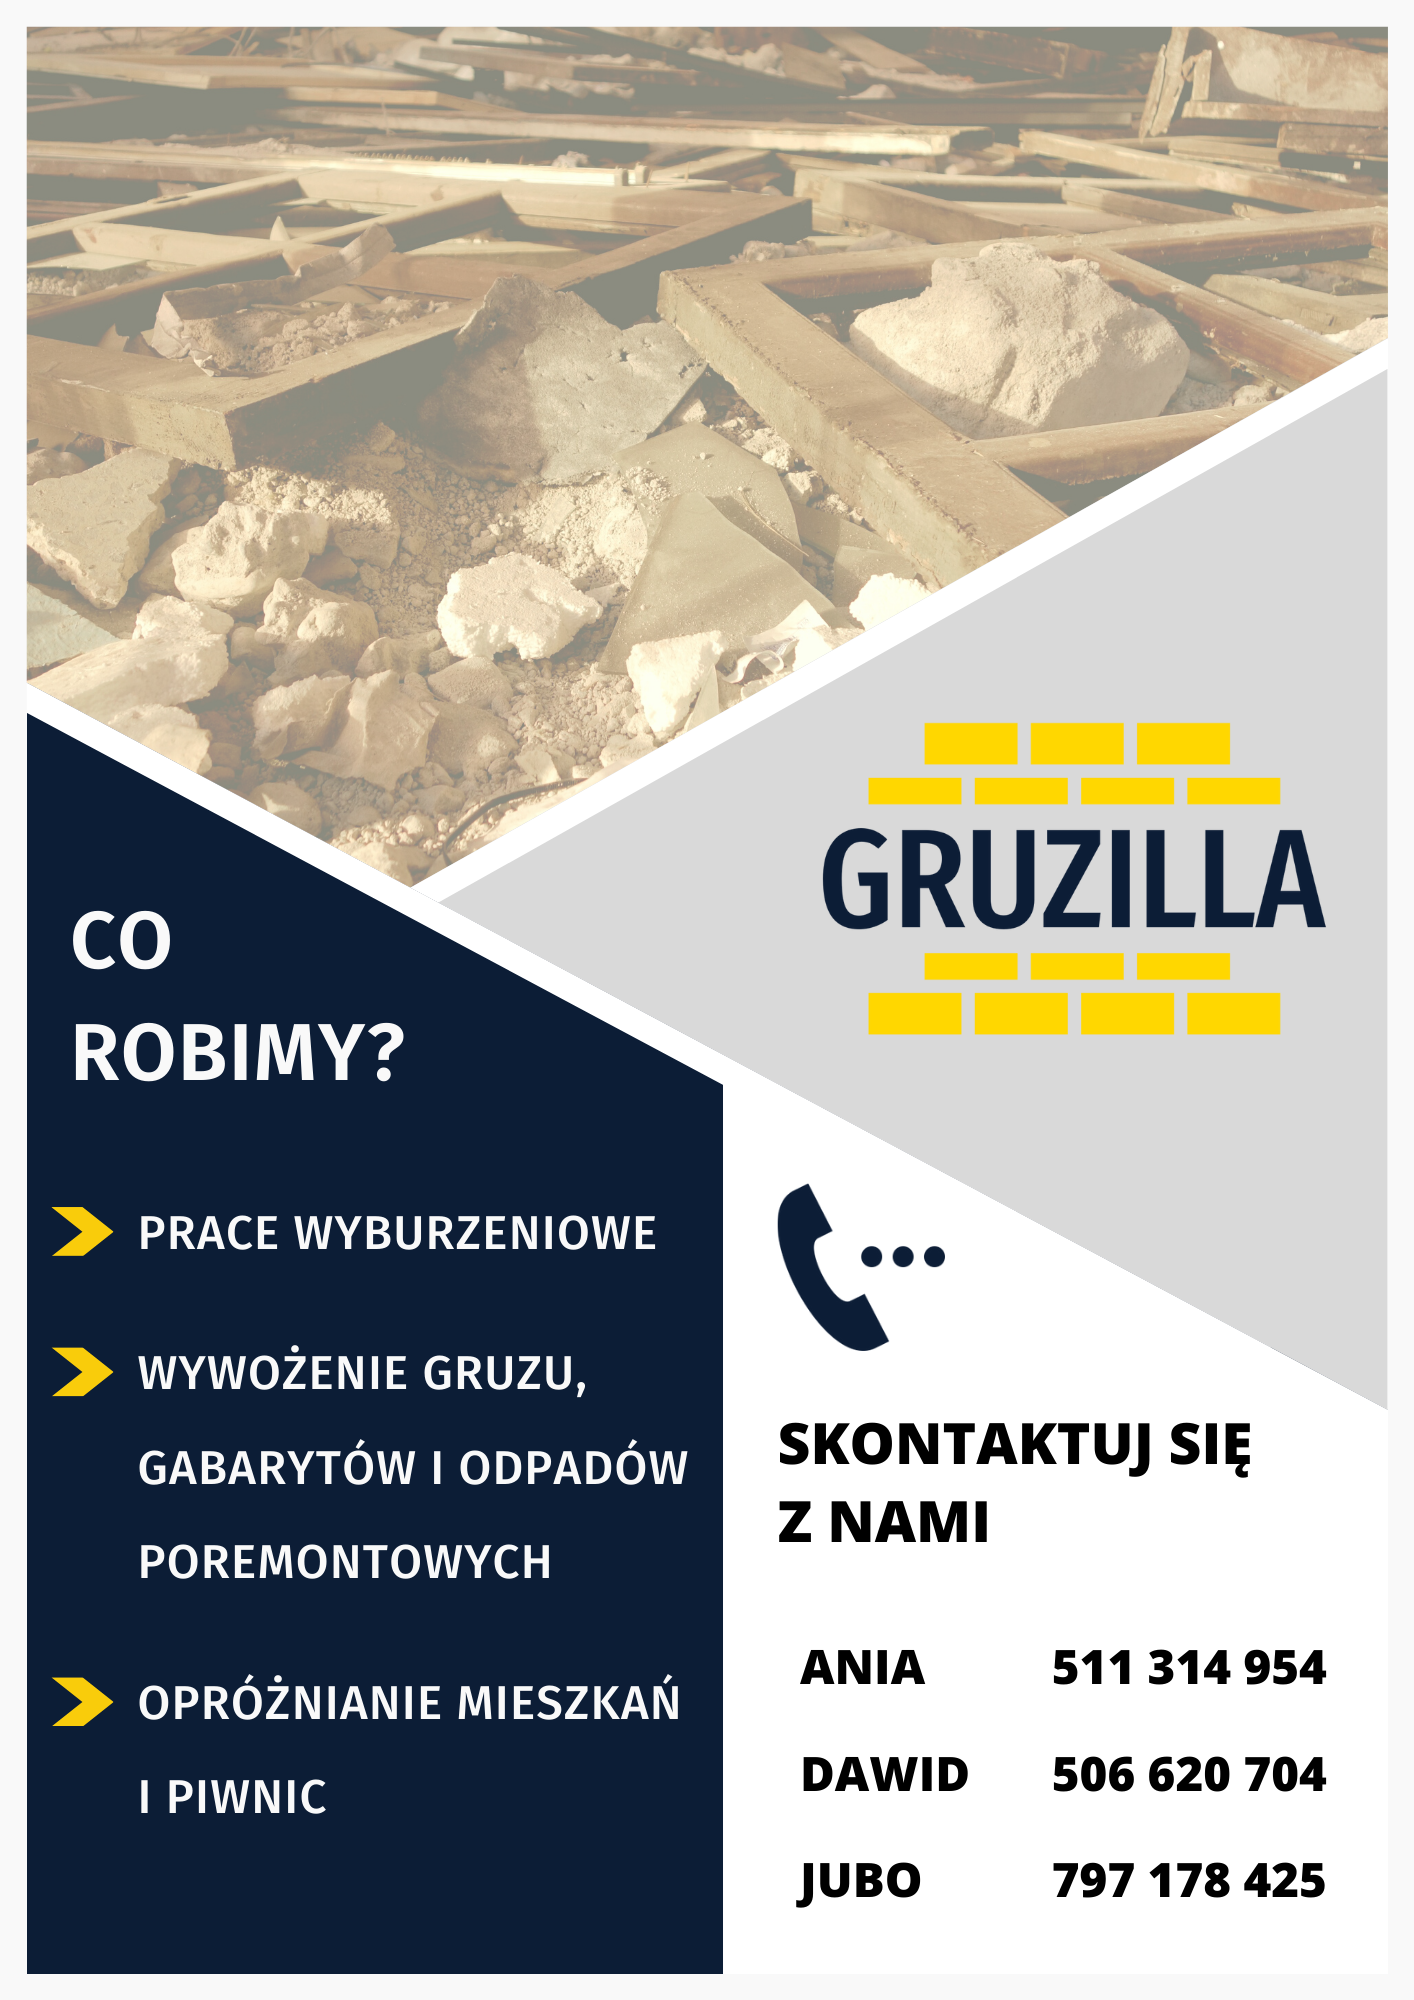 GRUZILLA – prace rozbiórkowe/wyburzeniowe – Warszawa Śródmieście - zdjęcie 1